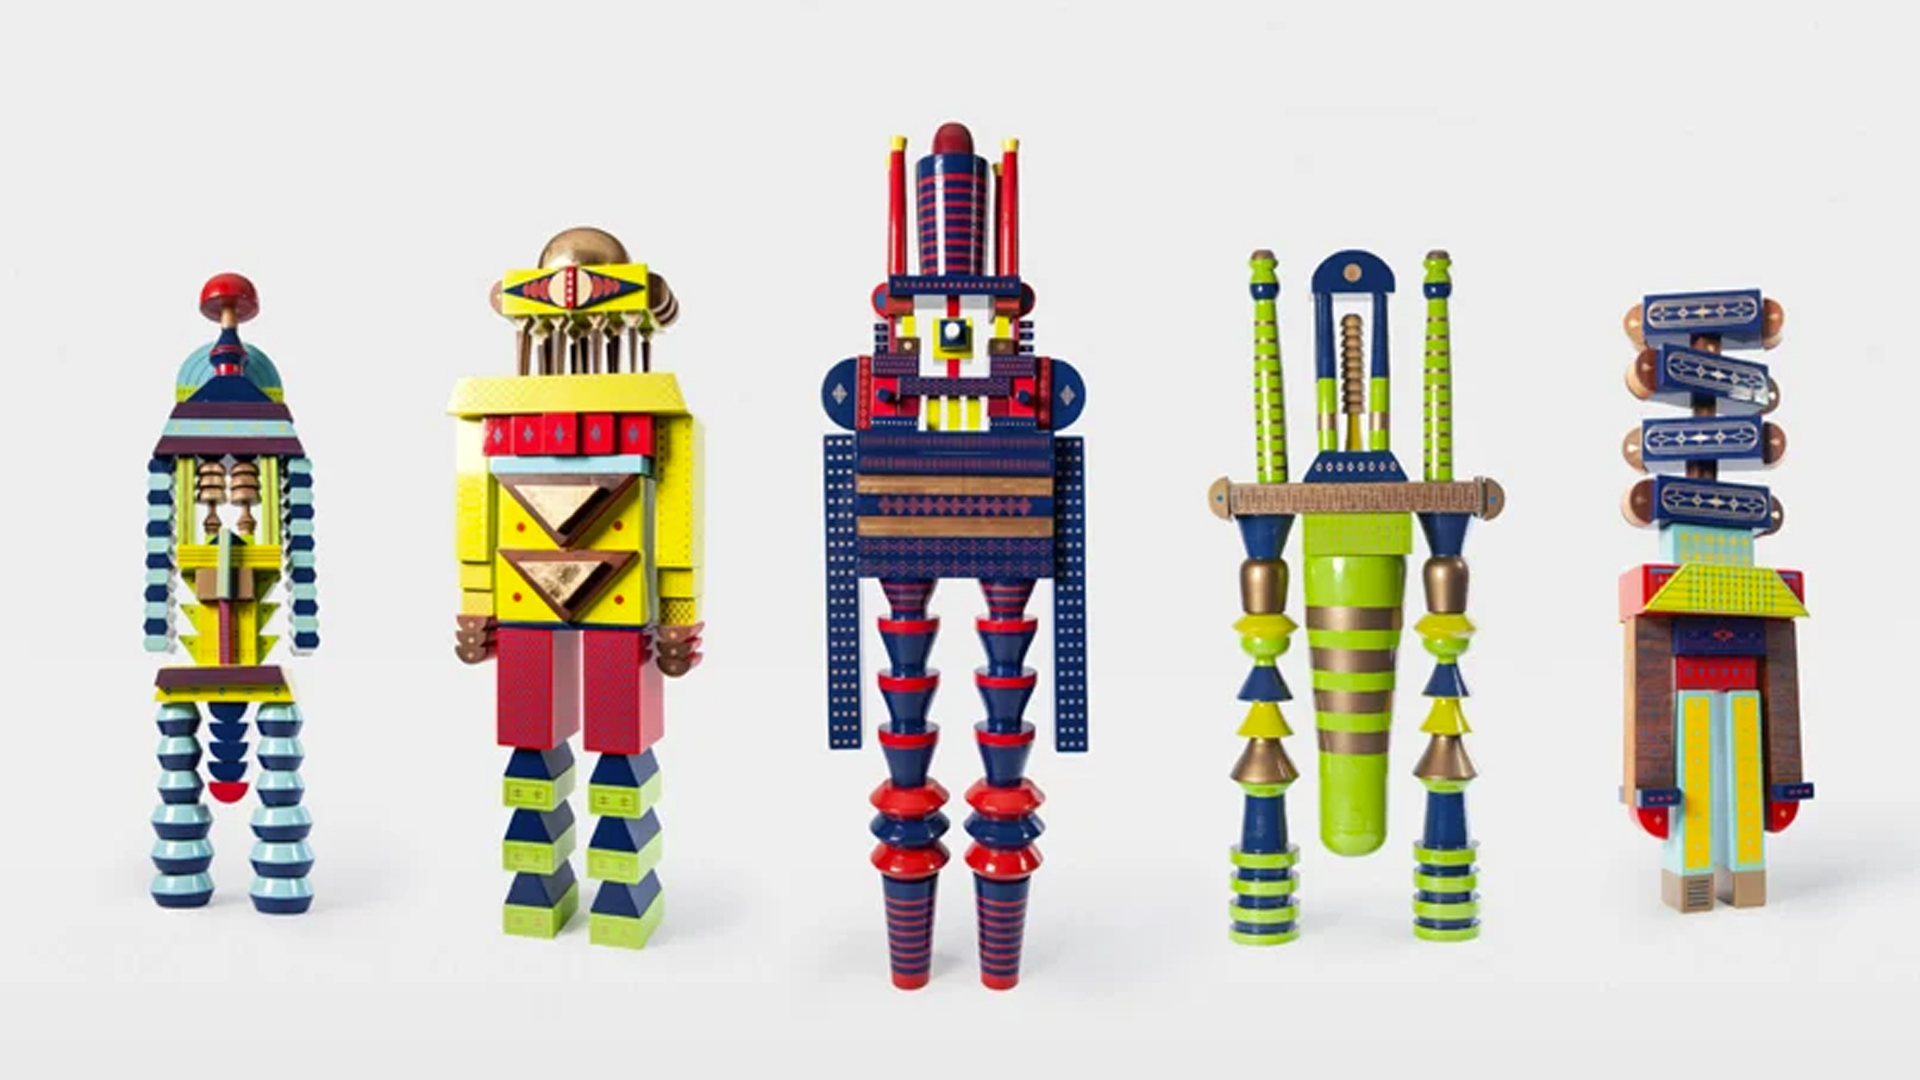 עיצוב שנולד מחדש. כל אחד מהצעצועים עשוי בעבודת יד מעץ וצבע הניתנים להרכבה עצמית.